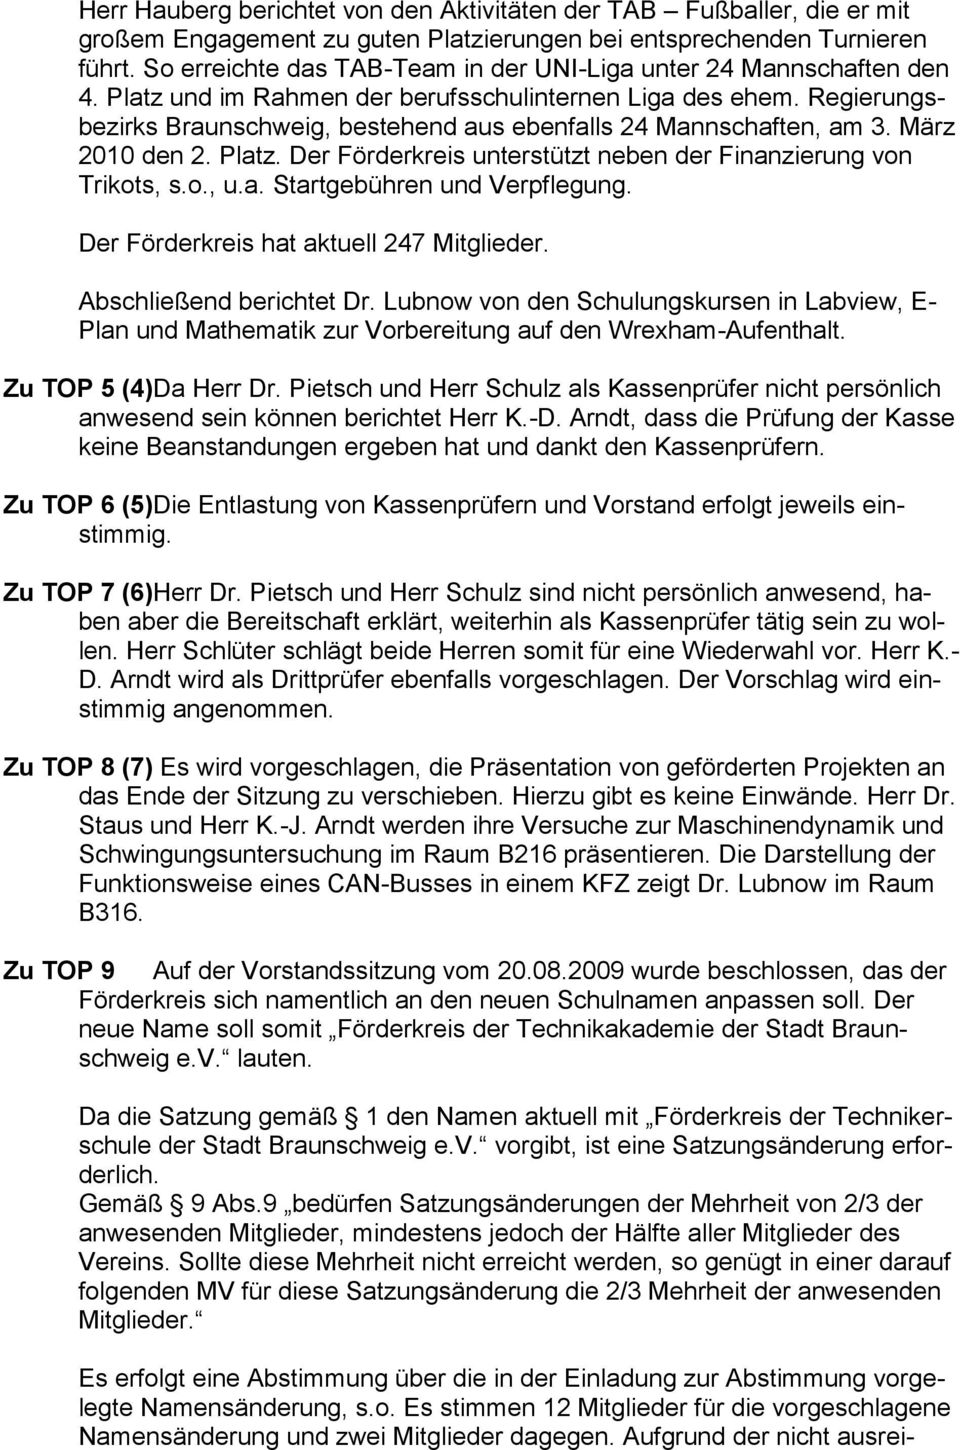 Regierungsbezirks Braunschweig, bestehend aus ebenfalls 24 Mannschaften, am 3. März 2010 den 2. Platz. Der Förderkreis unterstützt neben der Finanzierung von Trikots, s.o., u.a. Startgebühren und Verpflegung.